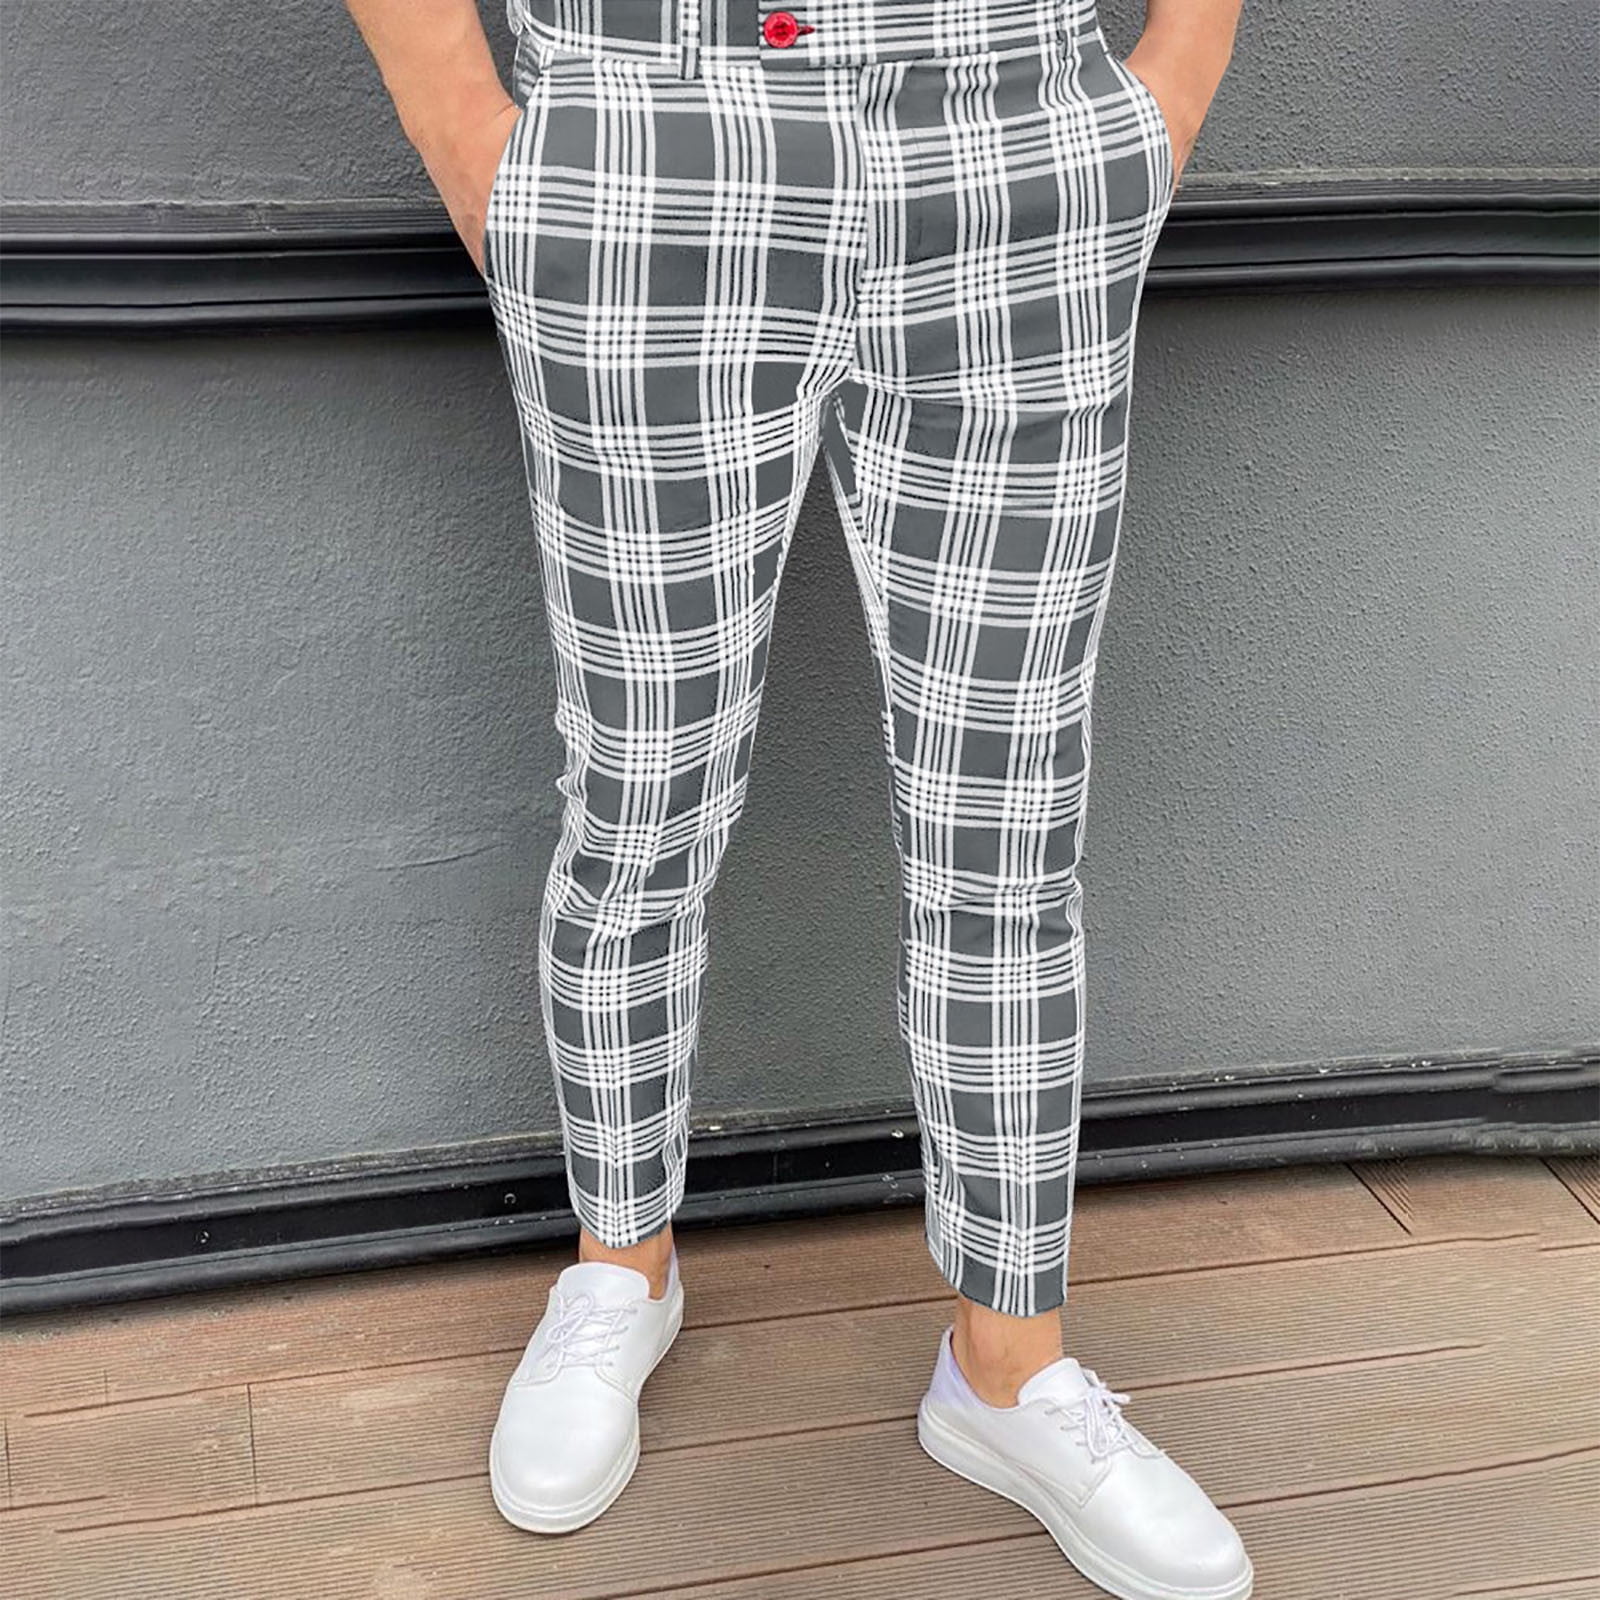 Men's Plaid Pajama Pants with Pockets Slim Fit Stretch Pants Activewear Casual  Pants Cotton Jogger Sport Pants Workout Pattern Lace-up Elastic Pencil Pants  Sweatpants Trousers 